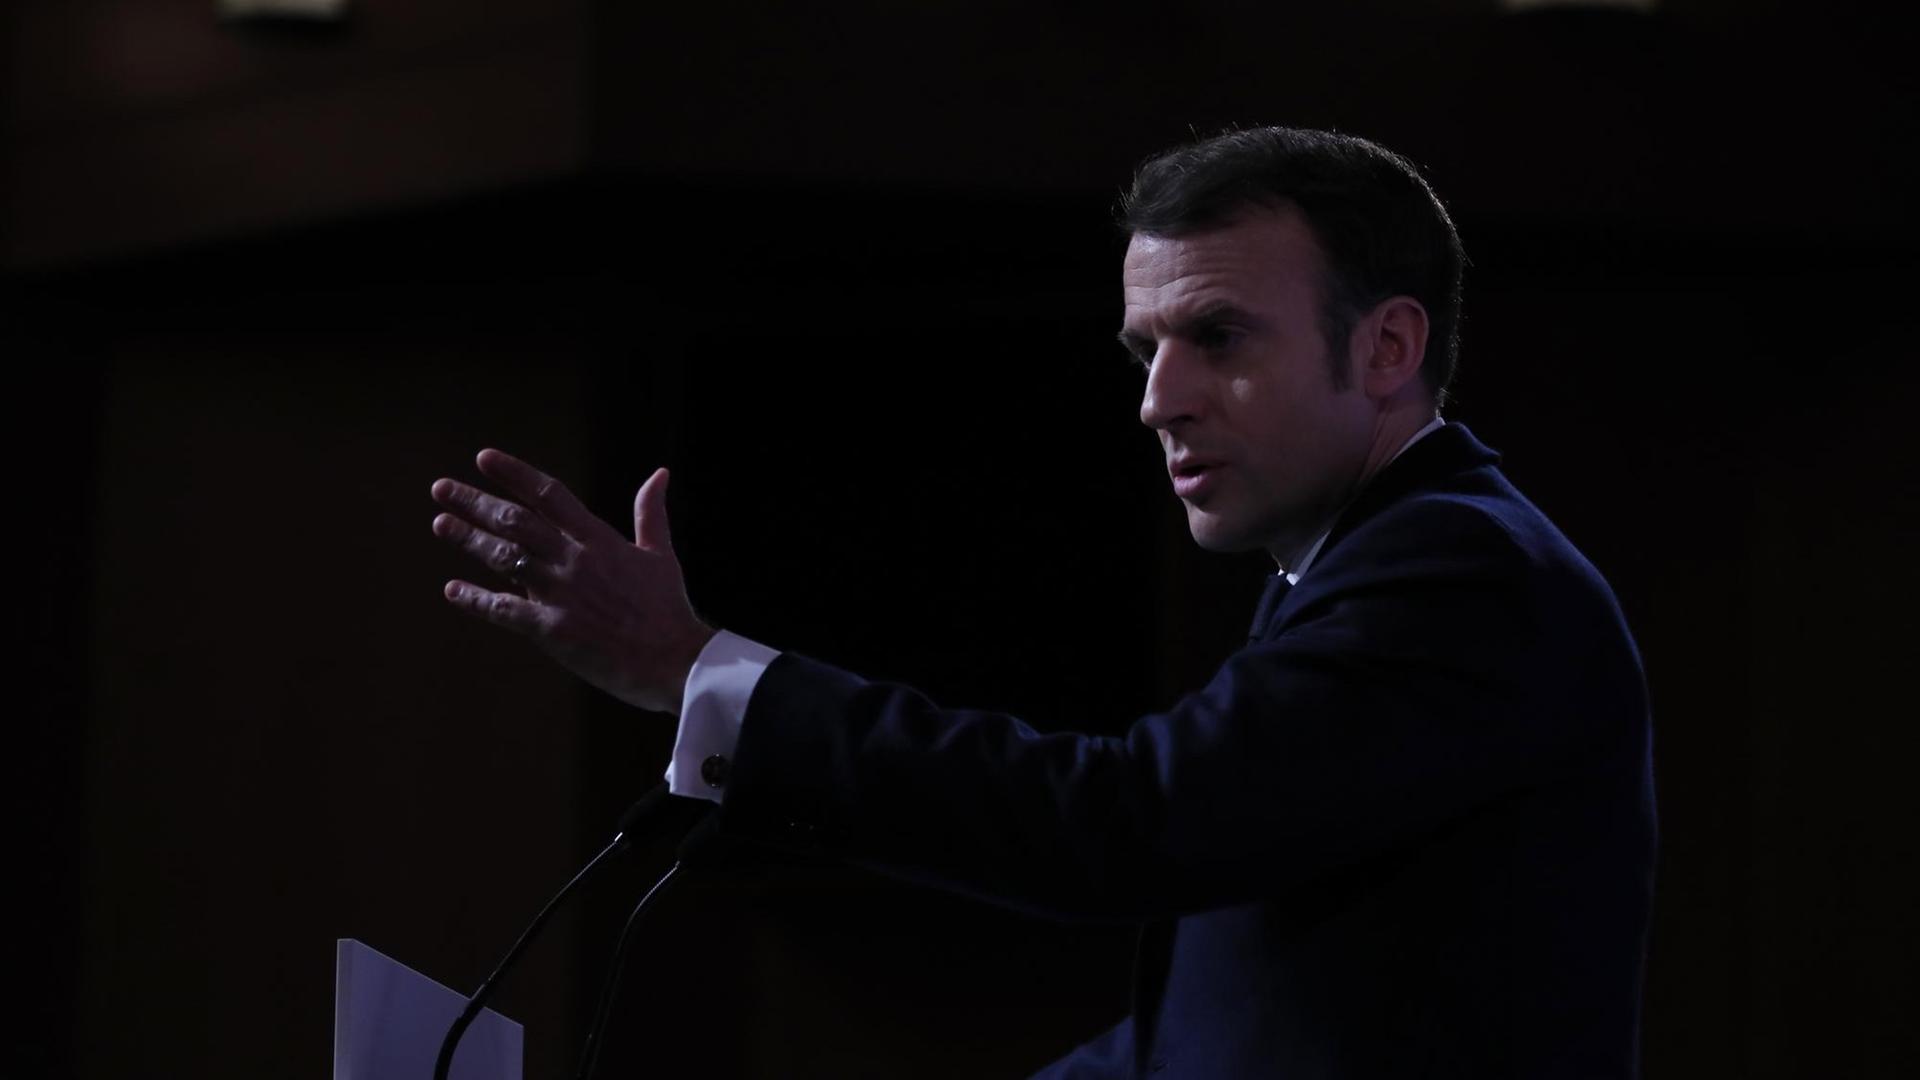 Frankreichs Präsident Macron ist während einer Rede von der Seite zu sehen. Er spricht mit seinen Händen gestikulierend in Mikrofone.